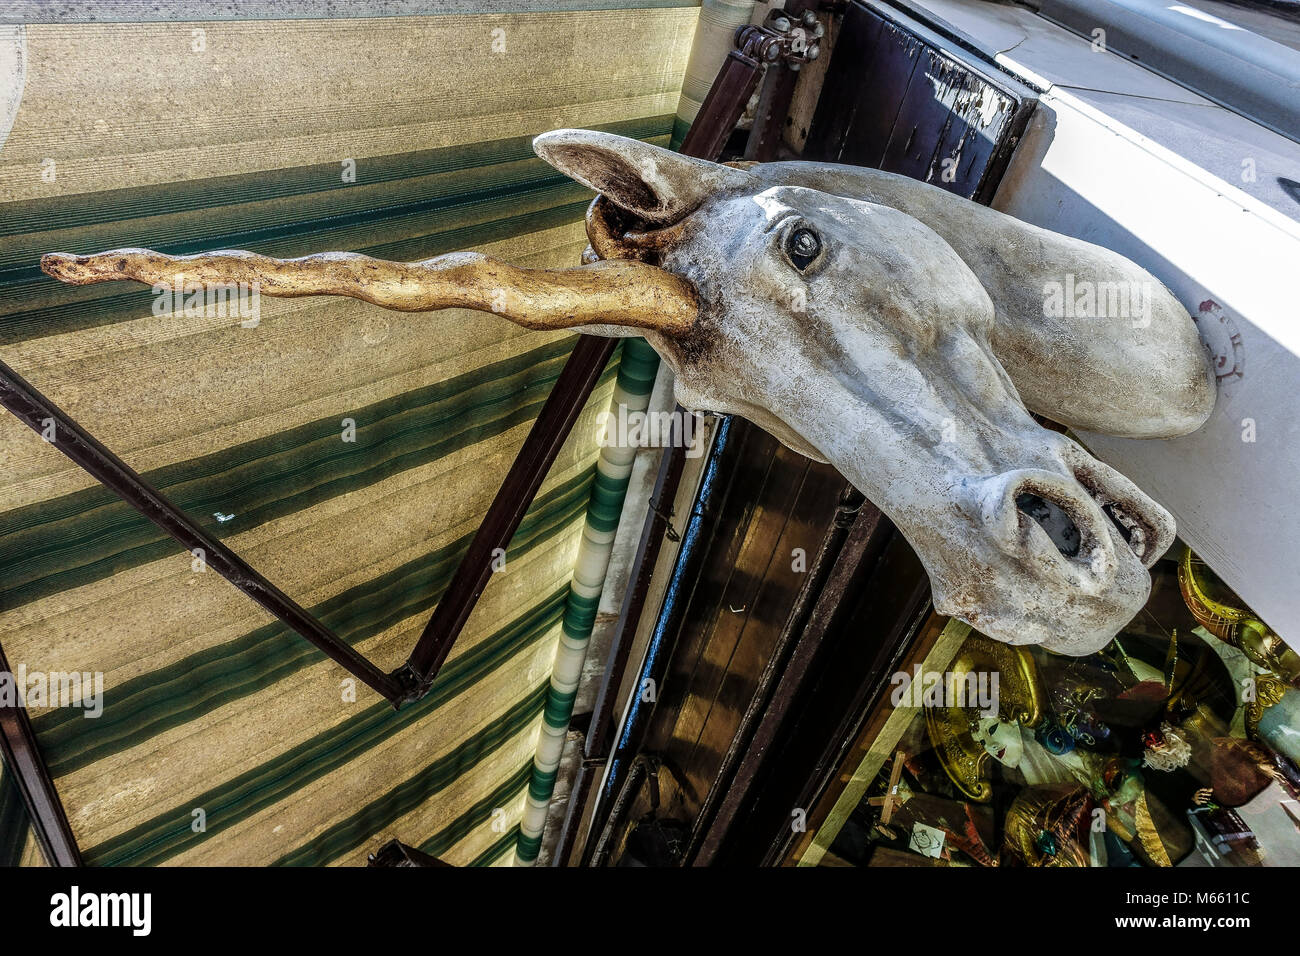 Blanc grand masque de tête licorne, comme signe, à l'extérieur d'un magasin typique de masques de carnaval vénitien. Venise magique, Italie, Europe, Union européenne, UE. Banque D'Images